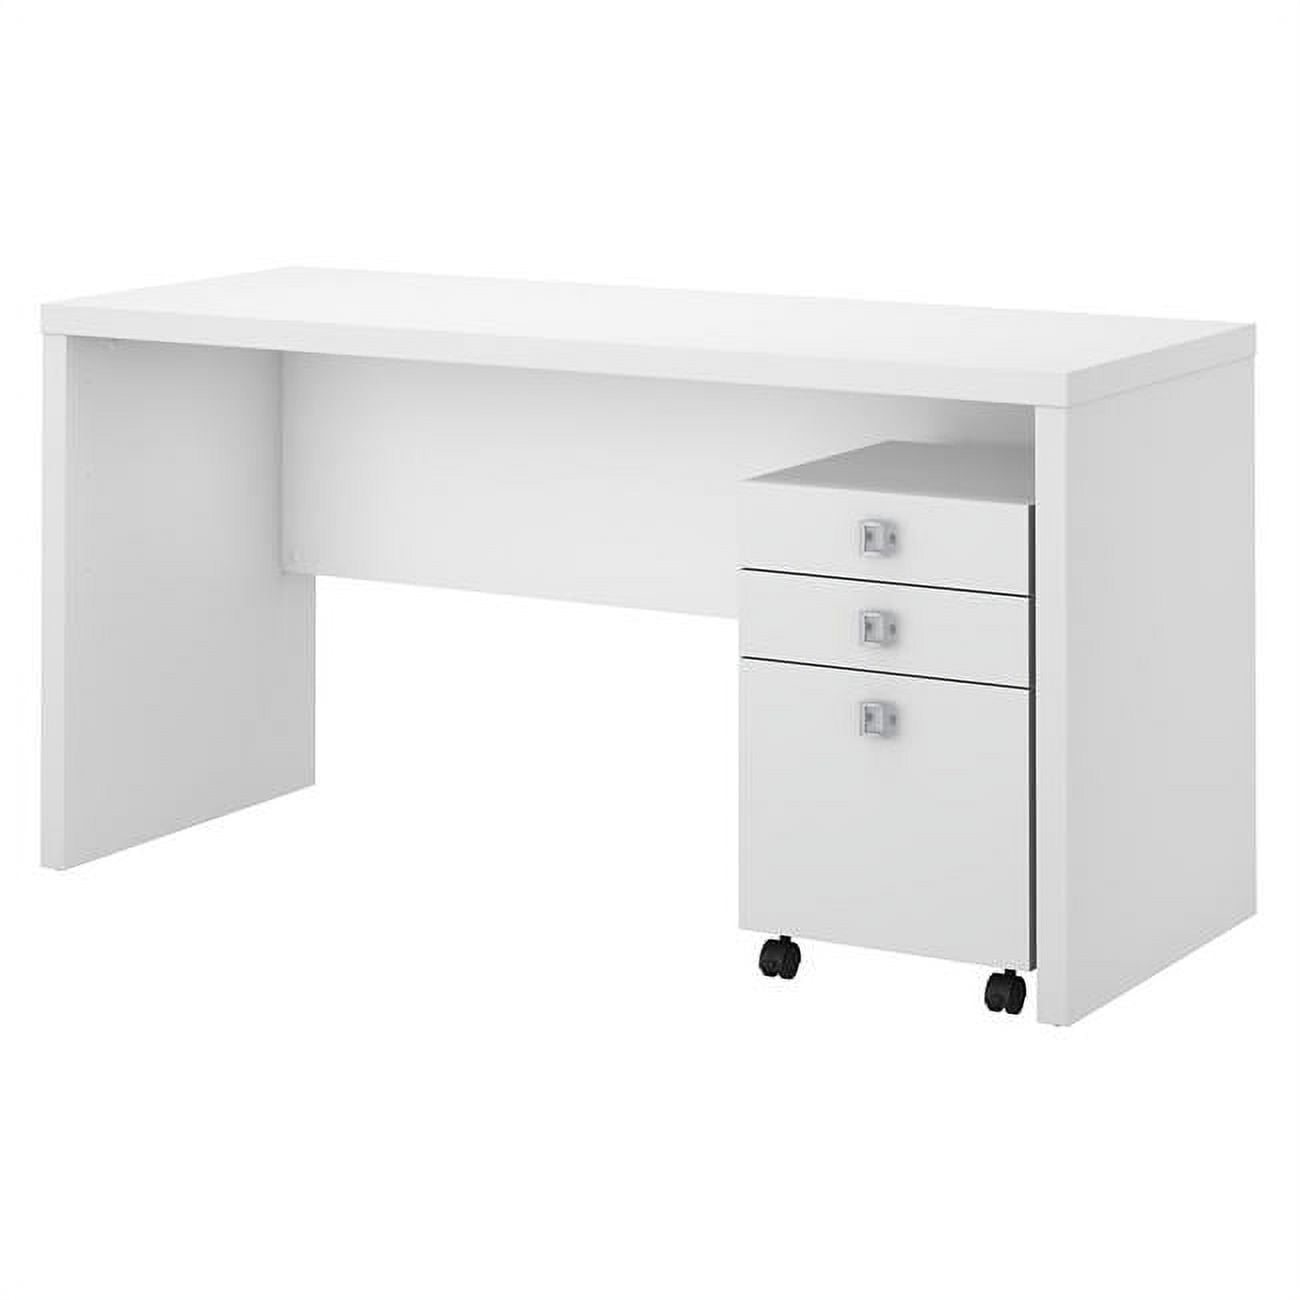 Ech003pw Echo Credenza Desk With Mobile File Cabinet - Pure White